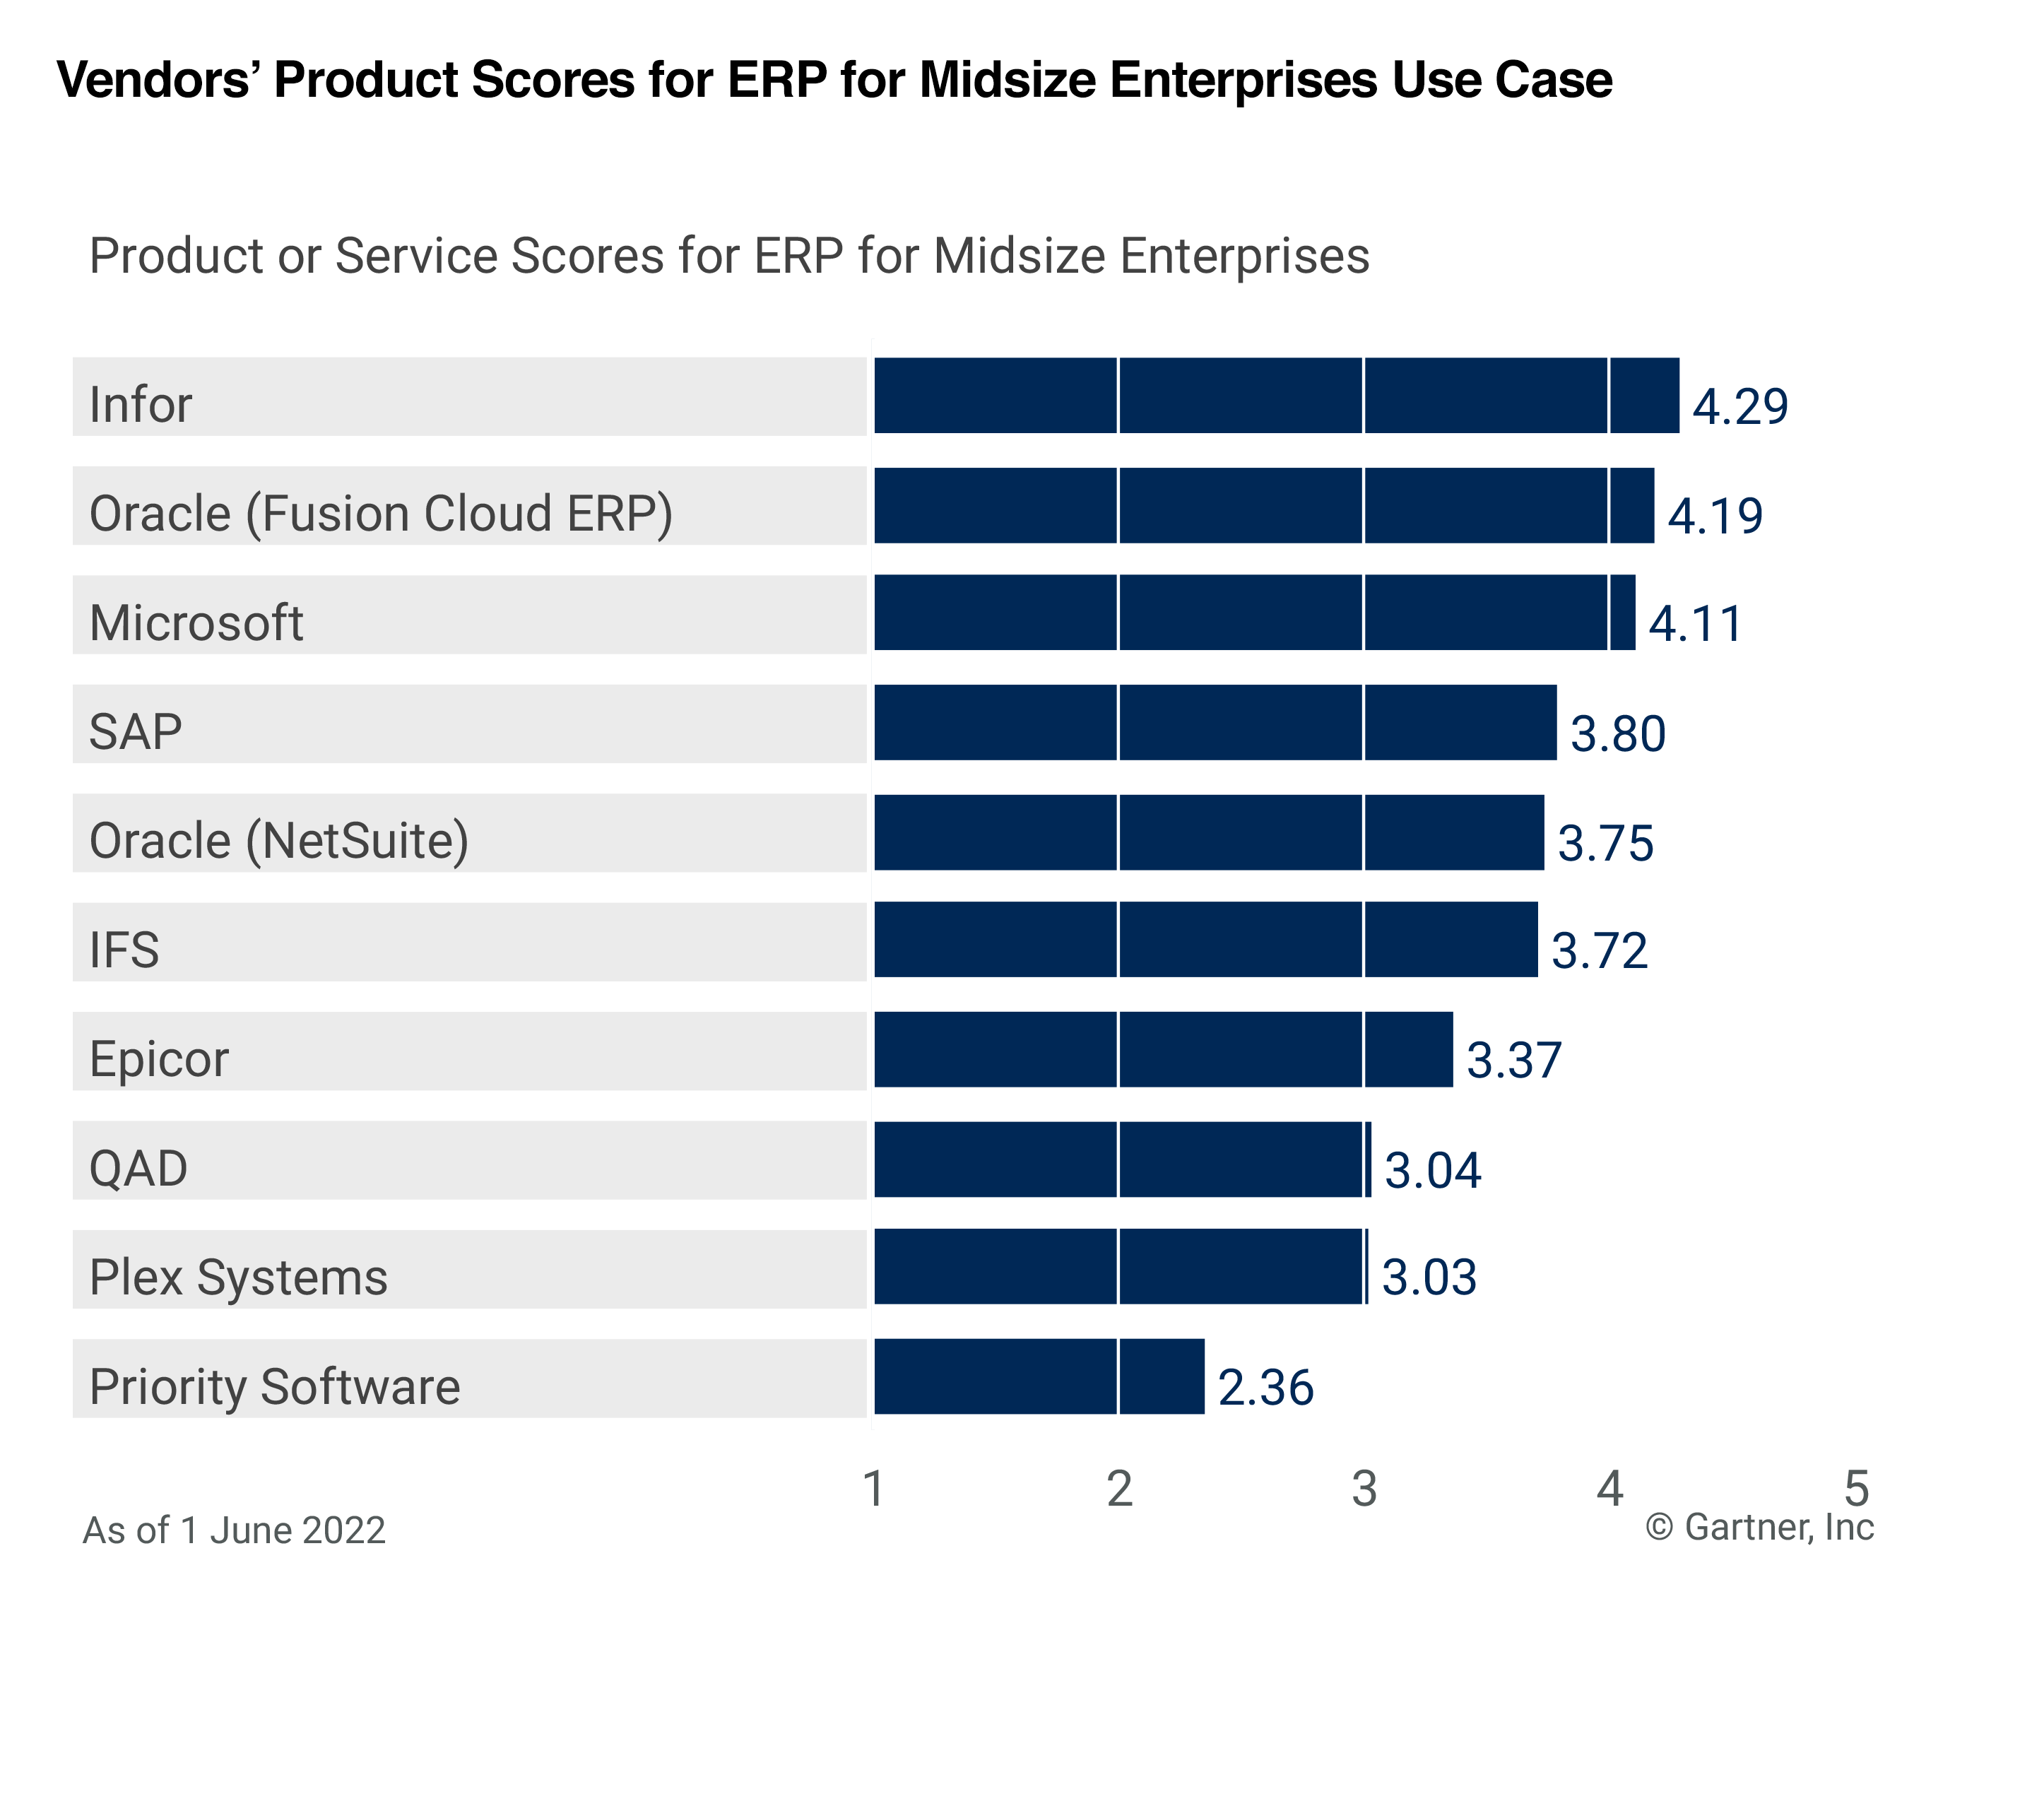 Vendors' product scores for ERP for midsize enterprises use case